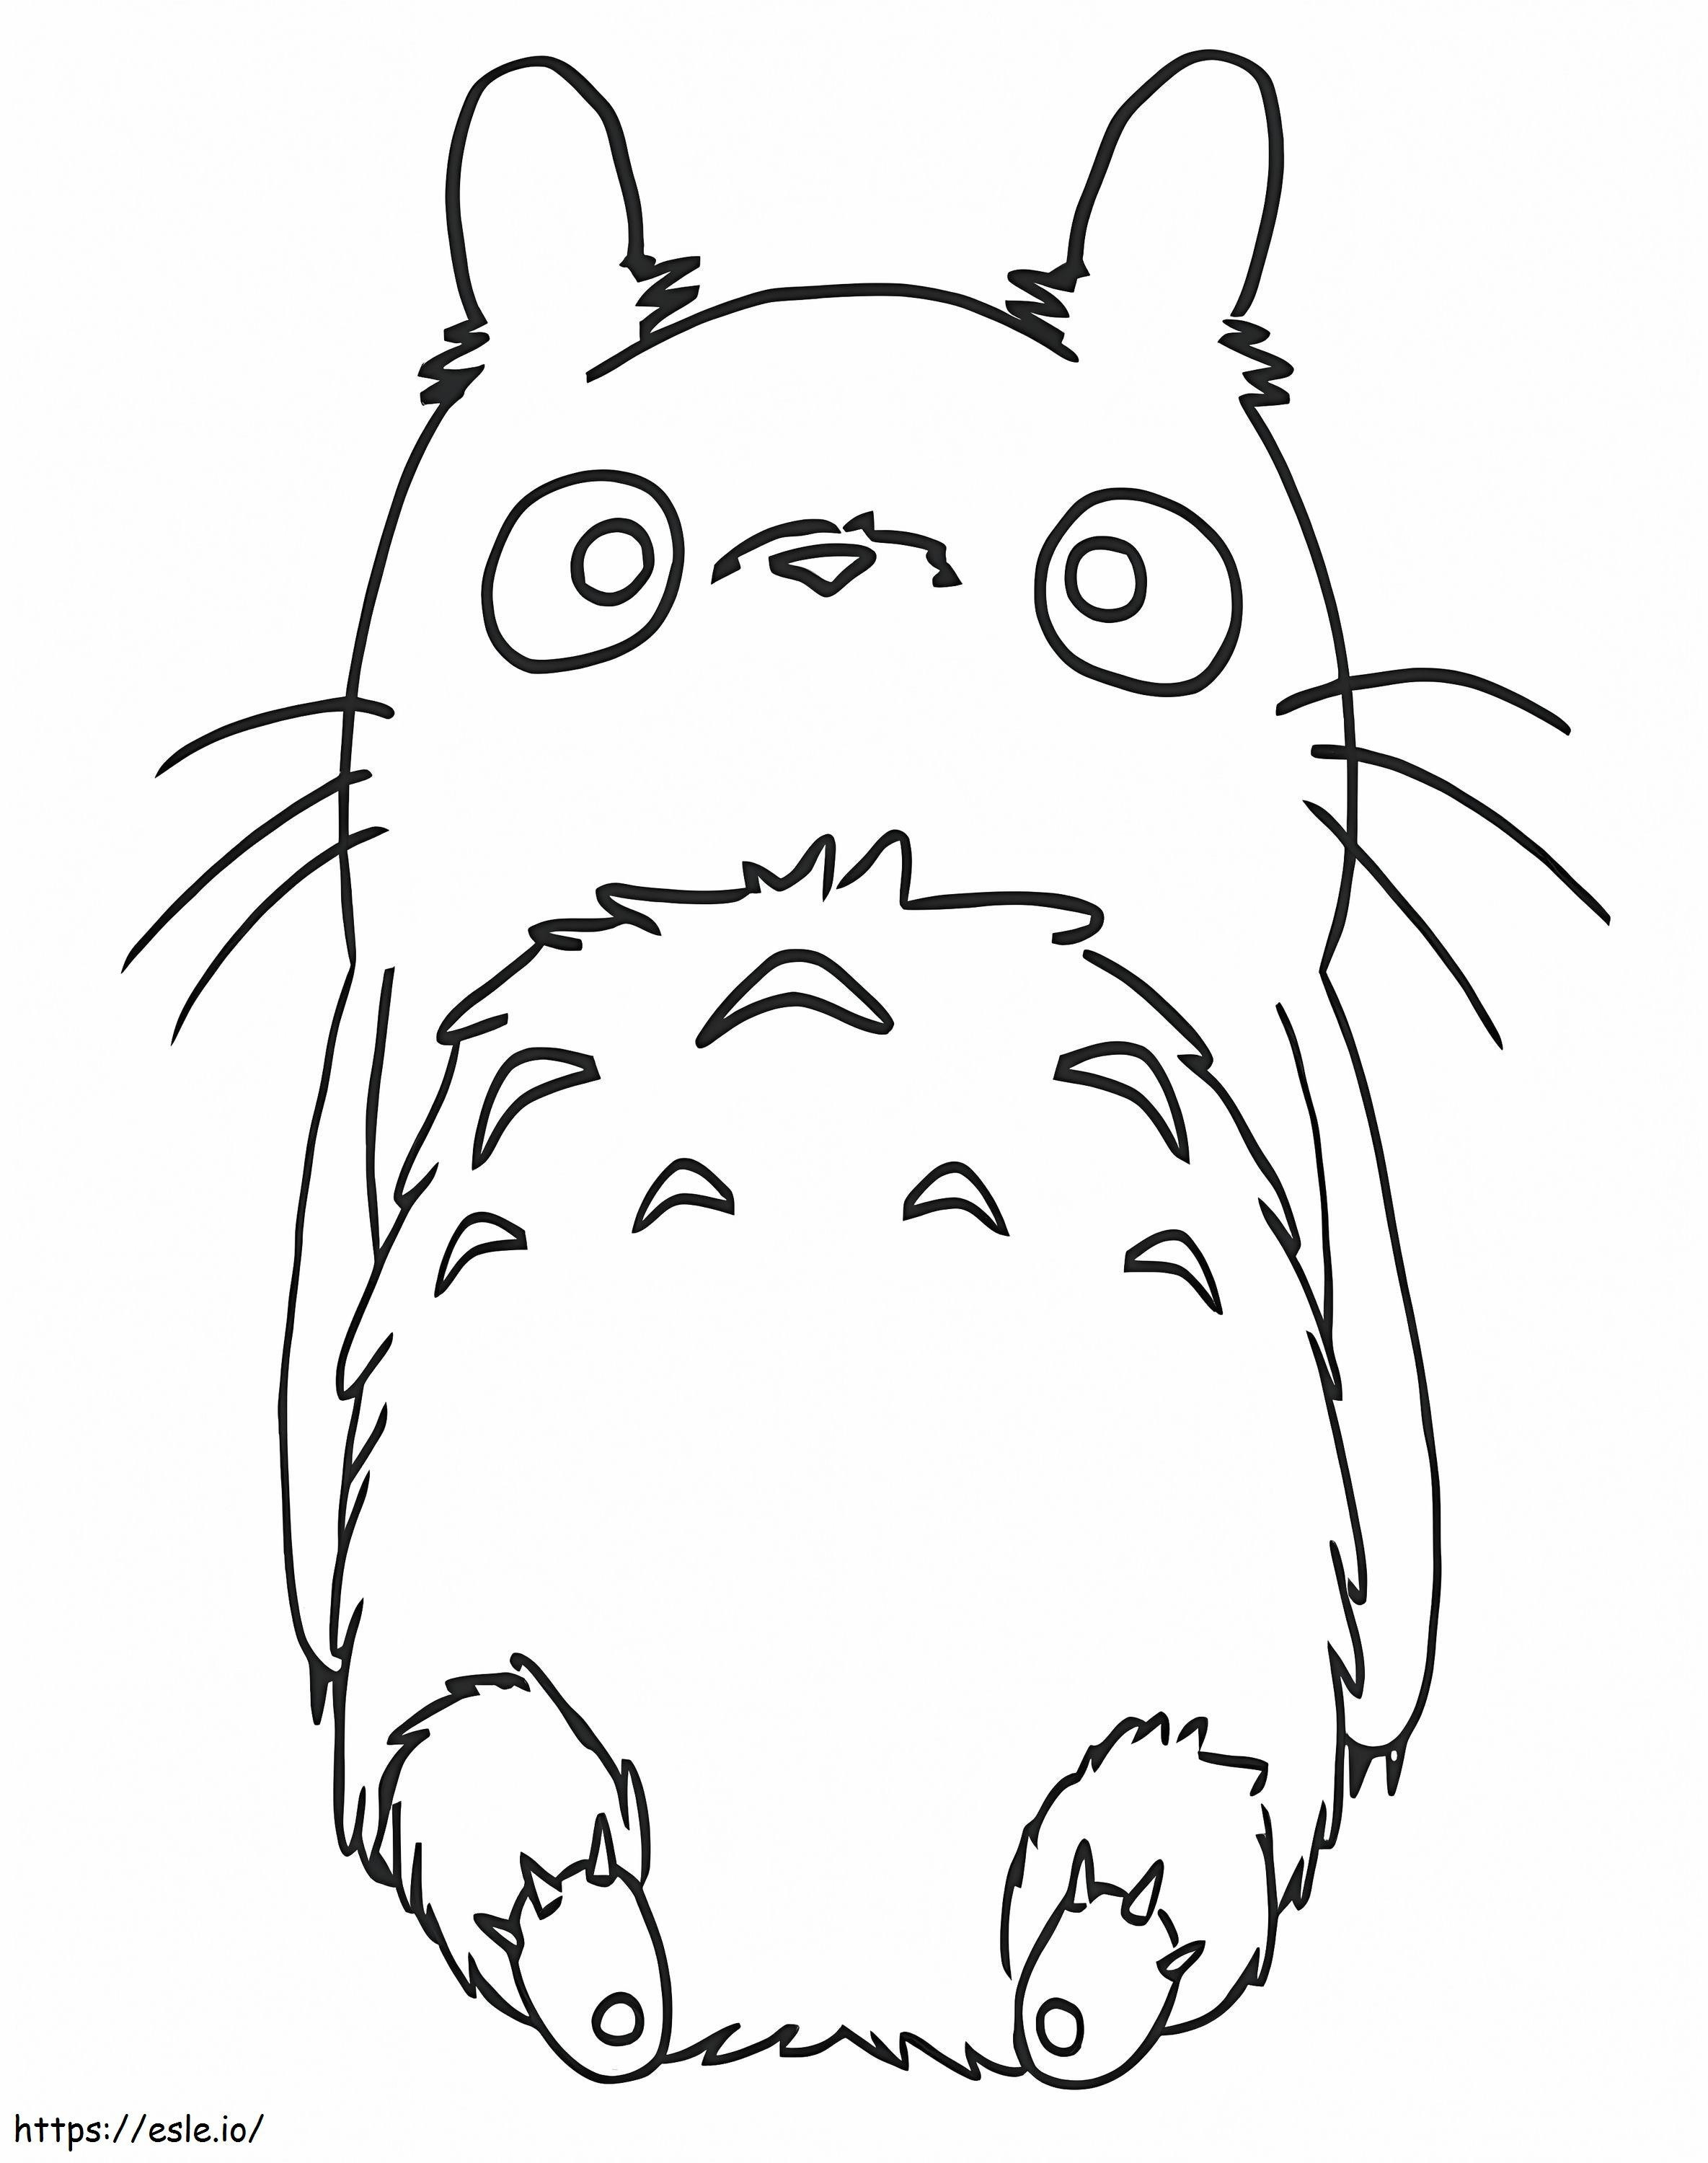 Coloriage Mignon Totoro allongé à imprimer dessin